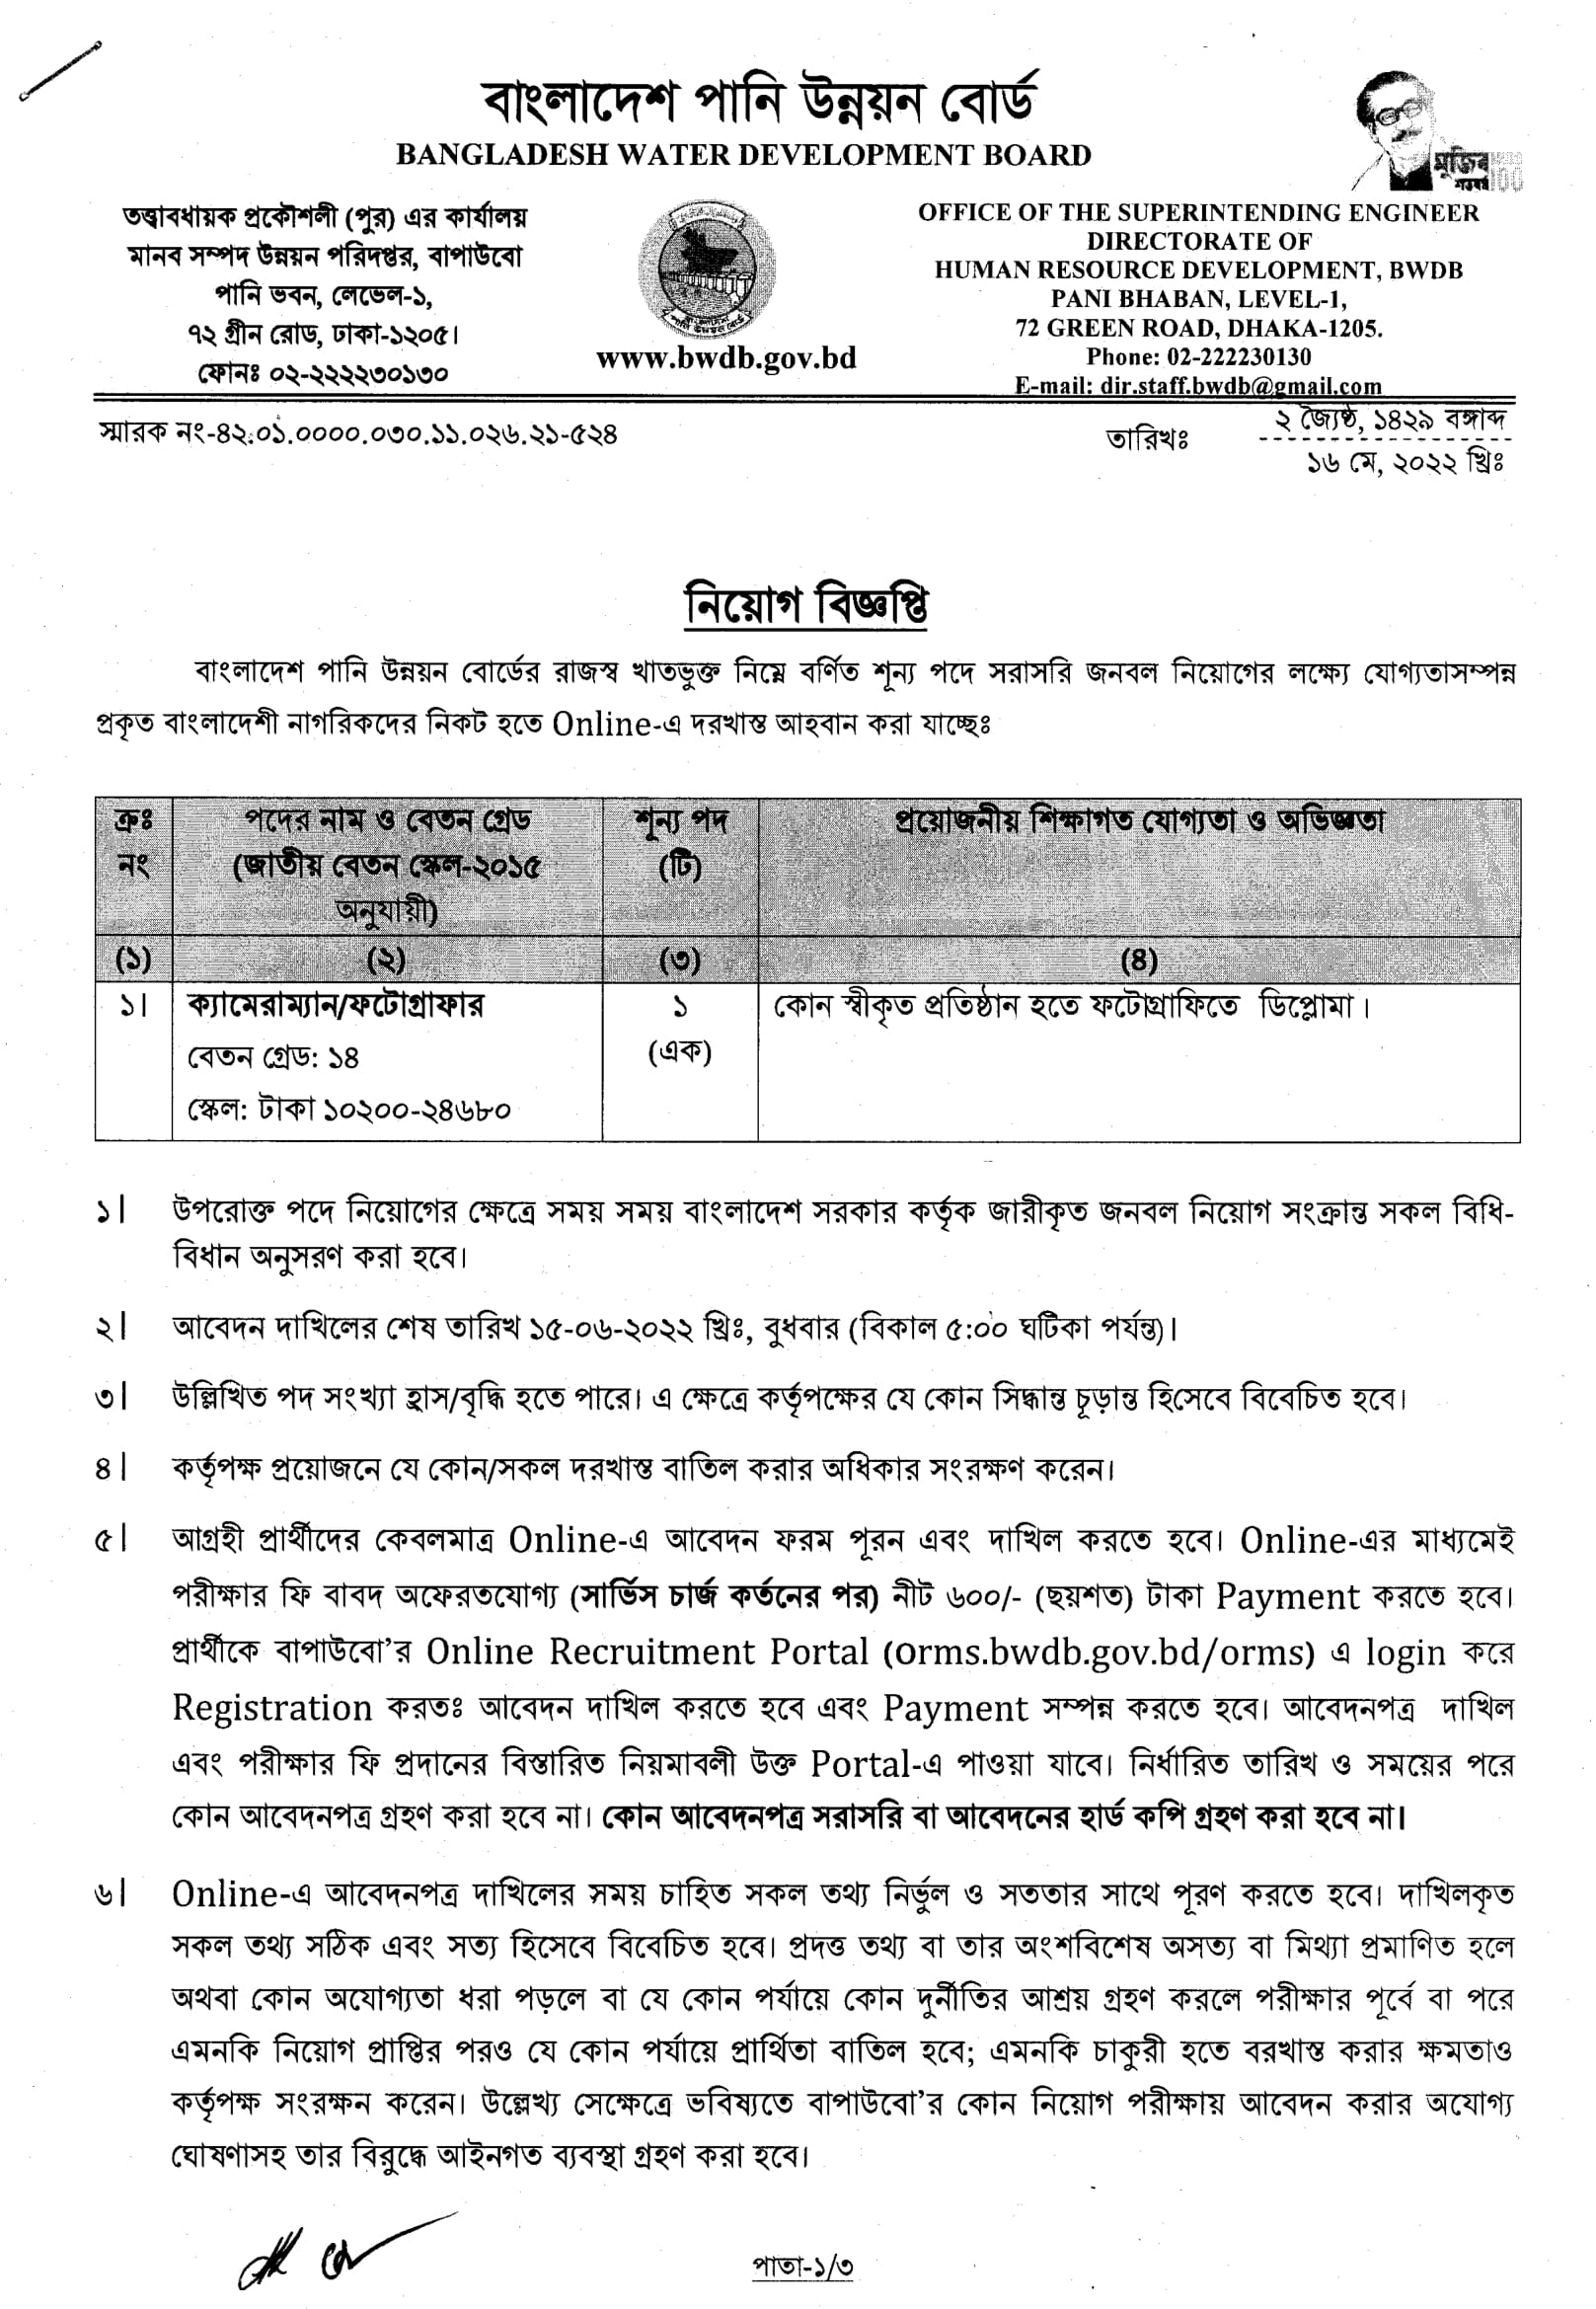 পানি উন্নয়ন বোর্ড নিয়োগ বিজ্ঞপ্তি 2022 - Bangladesh Water Development Board BWDB Job Circular 2022 - sorkari chakrir khobor 2022 - পানি উন্নয়ন বোর্ড নিয়োগ বিজ্ঞপ্তি 2023 - Bangladesh Water Development Board BWDB Job Circular 2023 - sorkari chakrir khobor 2023